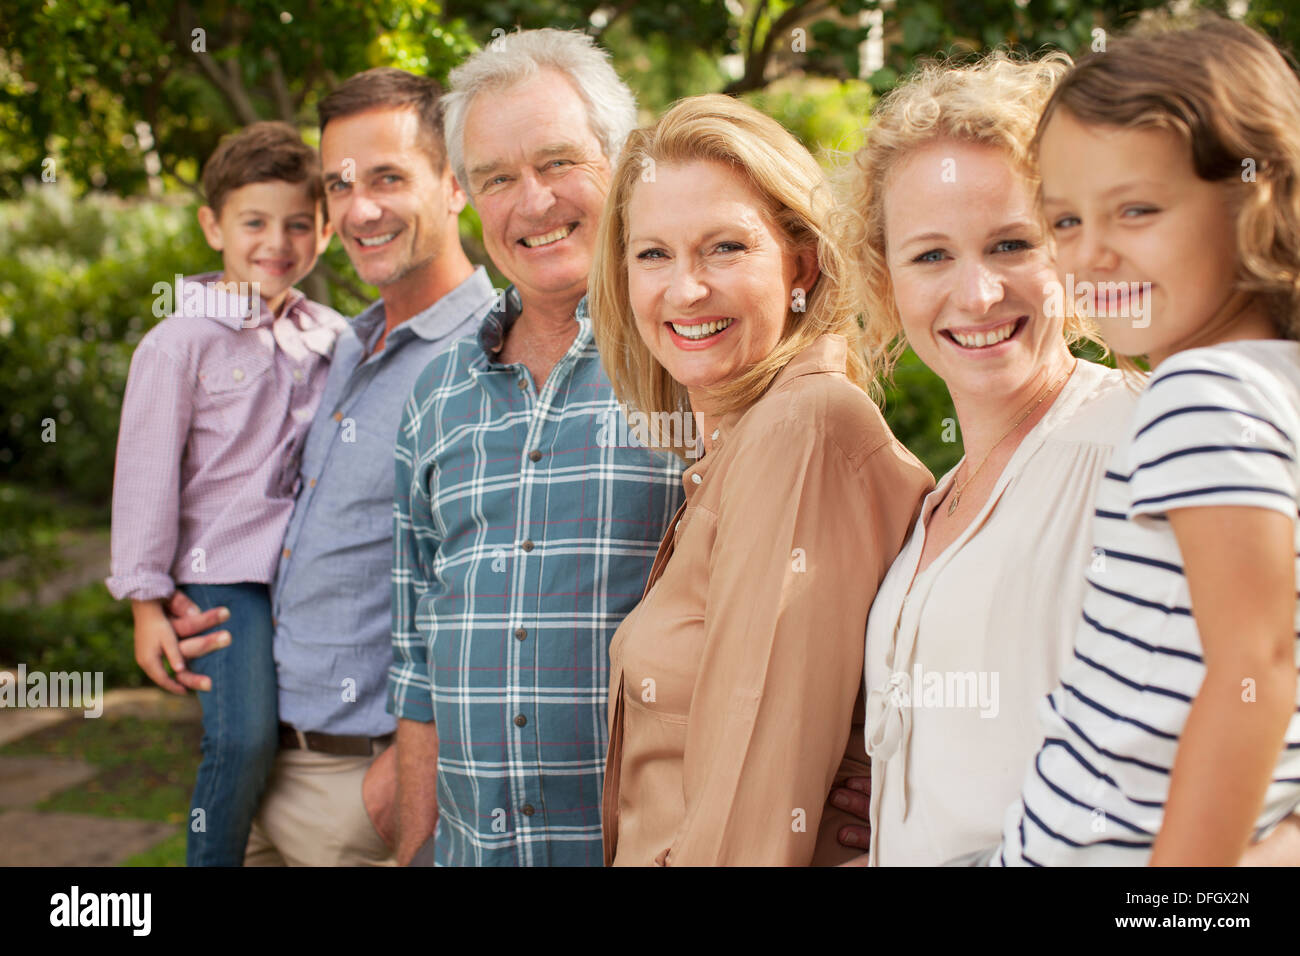 Portrait de multi-generation family smiling outdoors Banque D'Images